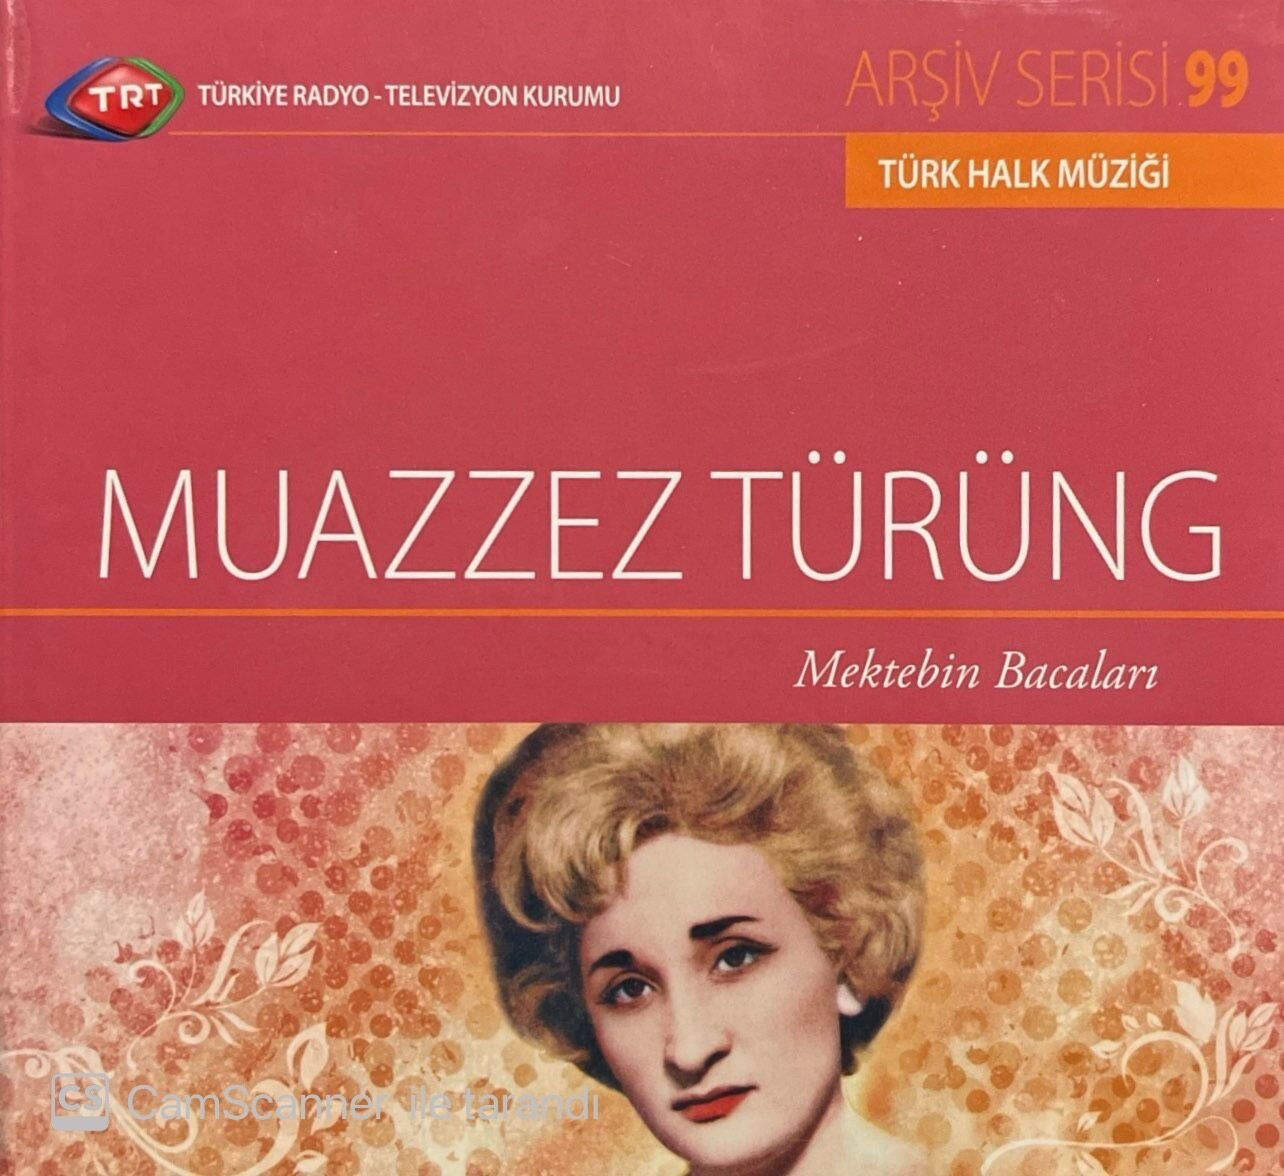 TRT Arşiv Serisi 99 Muazzez Türüng Mektebin Bacaları CD